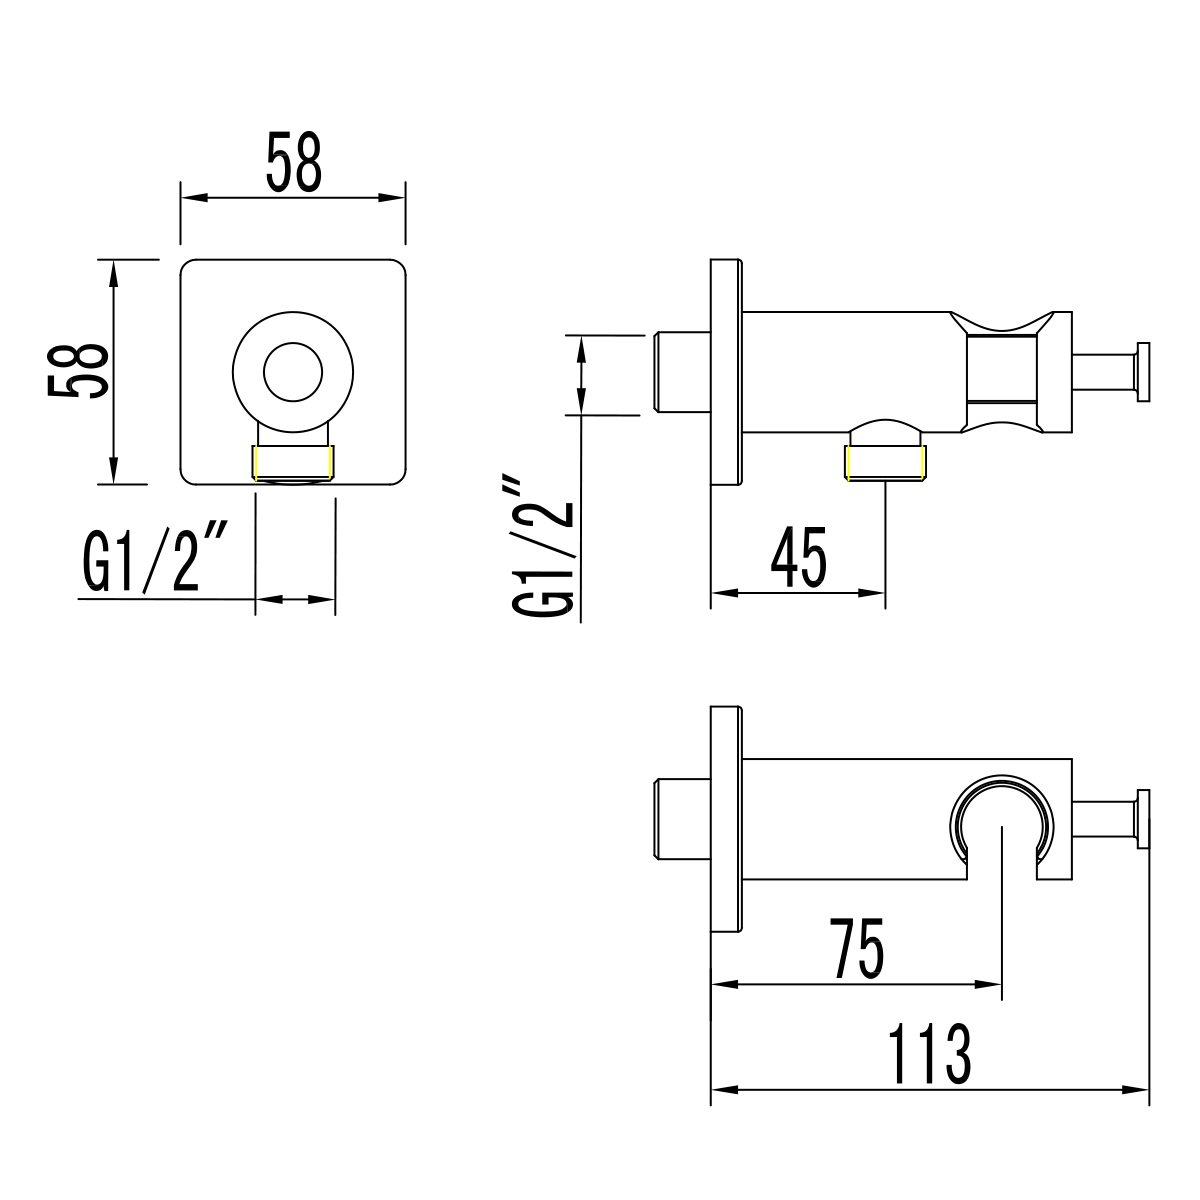 LM7885C Integrated shower holder/hose connector